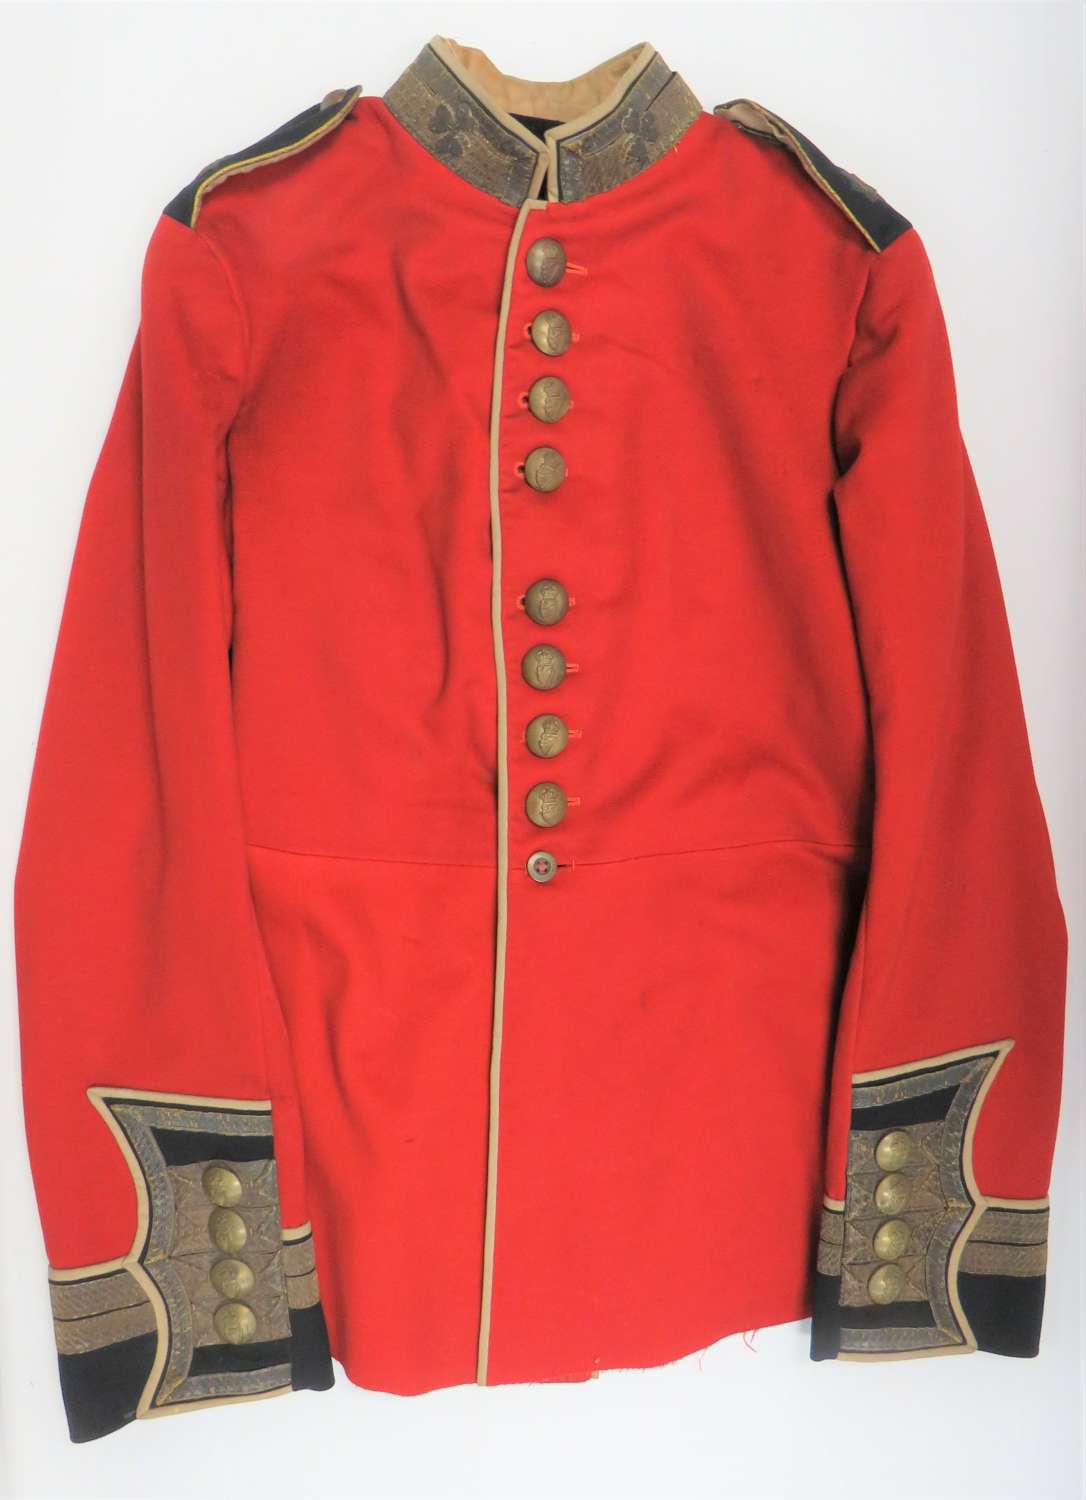 Interwar Irish Guards Senior N.C.O s Full Dress Tunic